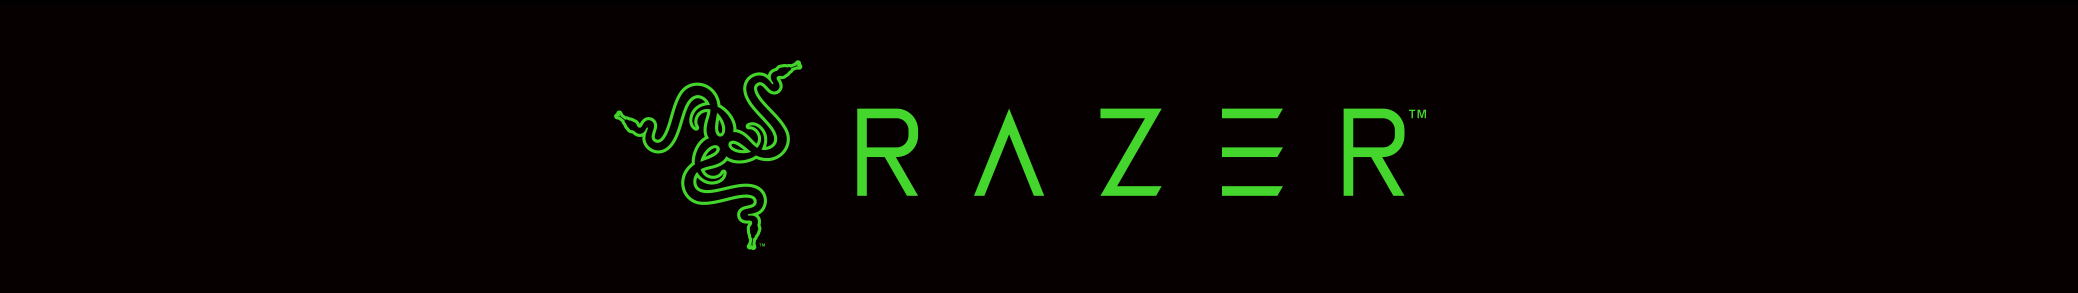 Bannière marque Razer